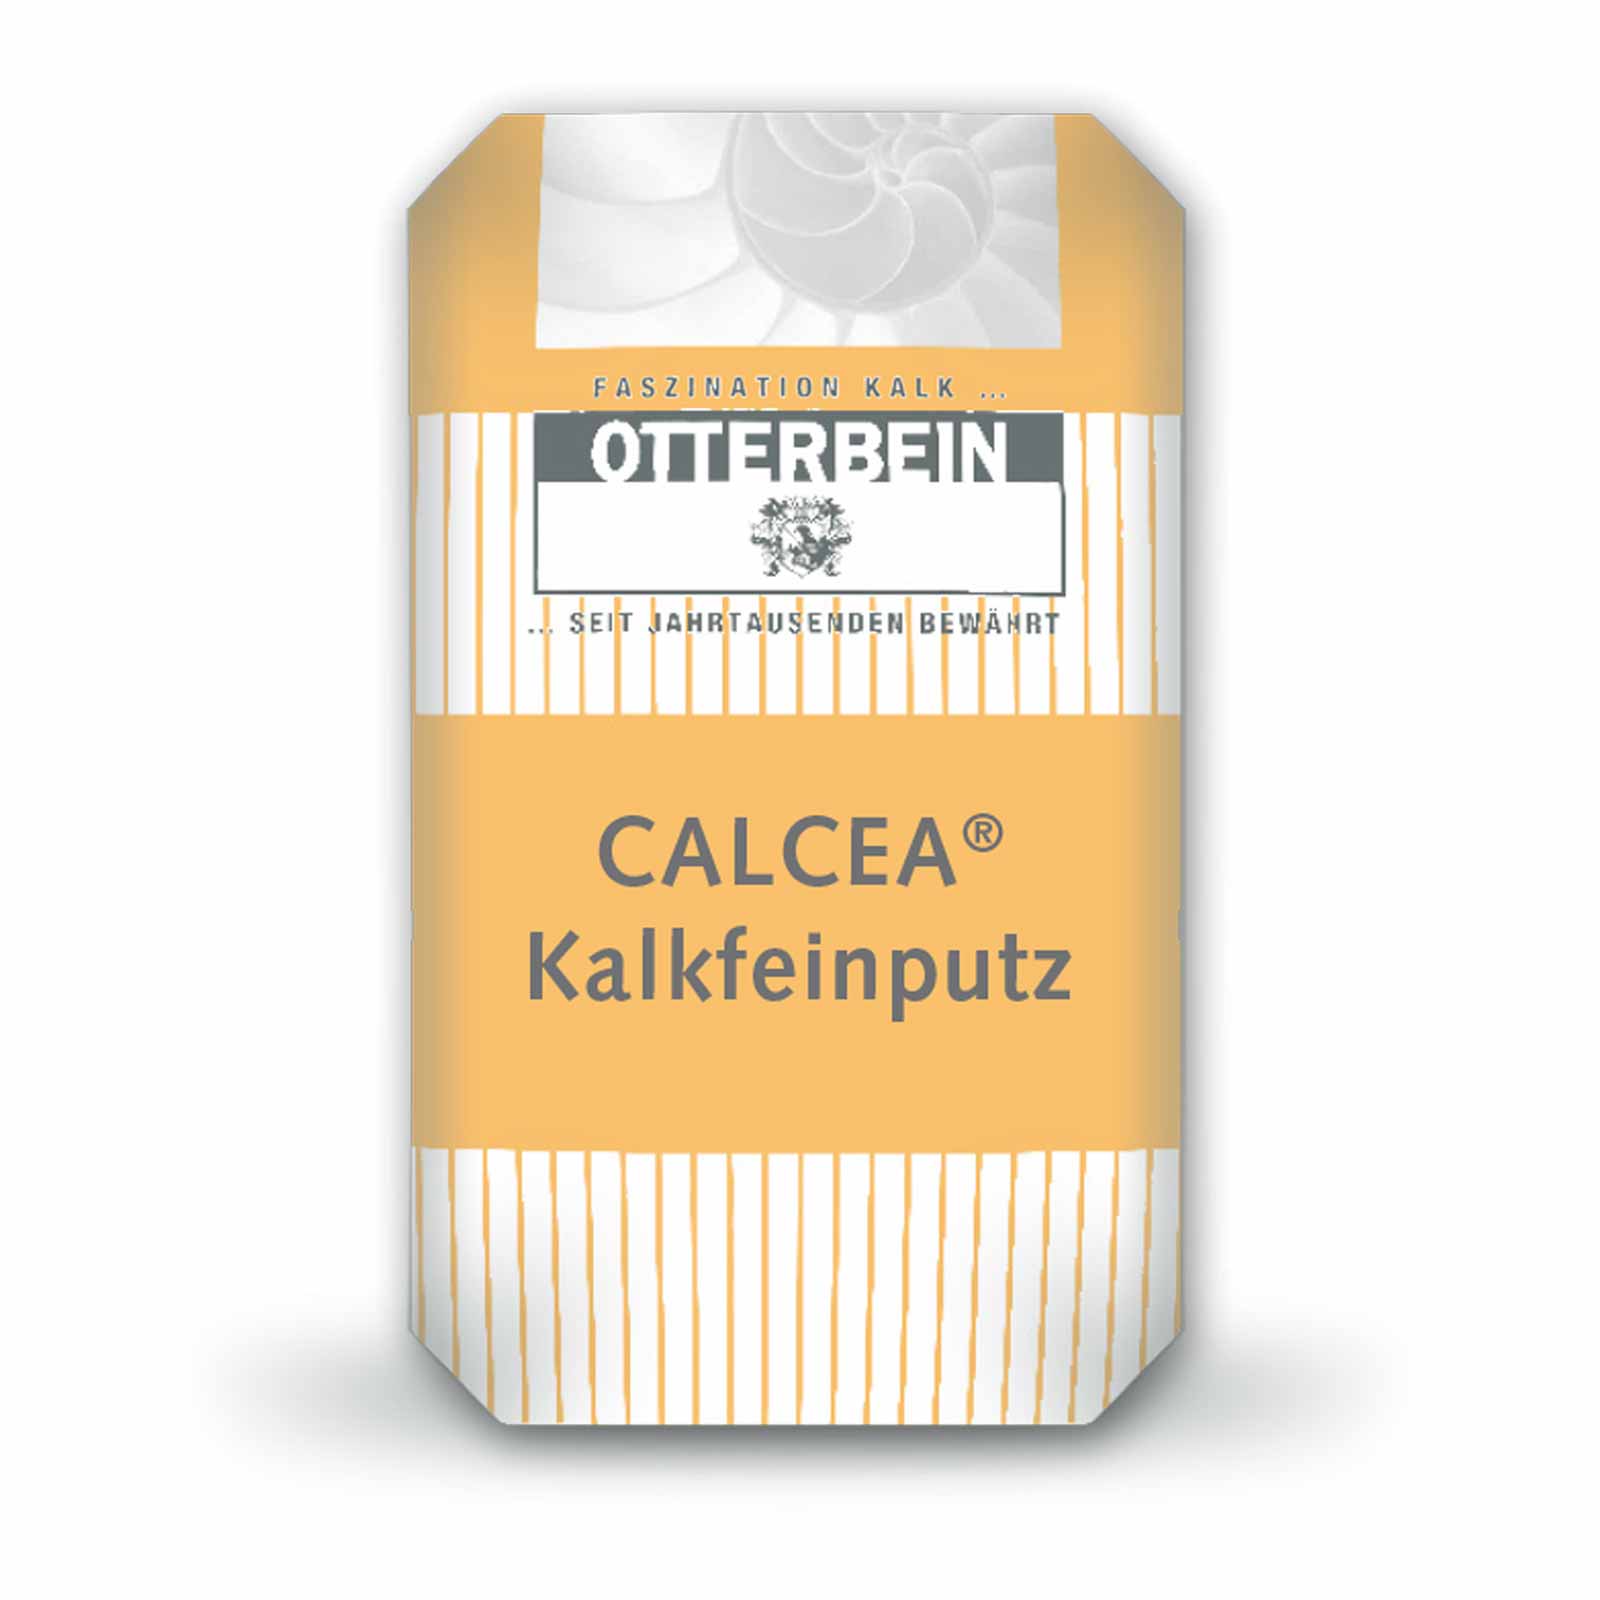 OTTERBEIN CALCEA Kalkfeinputz 25 kg werksgemischter natürlicher Kalk - EN 459-1 Inhalt:25 kg von ZKW Otterbein